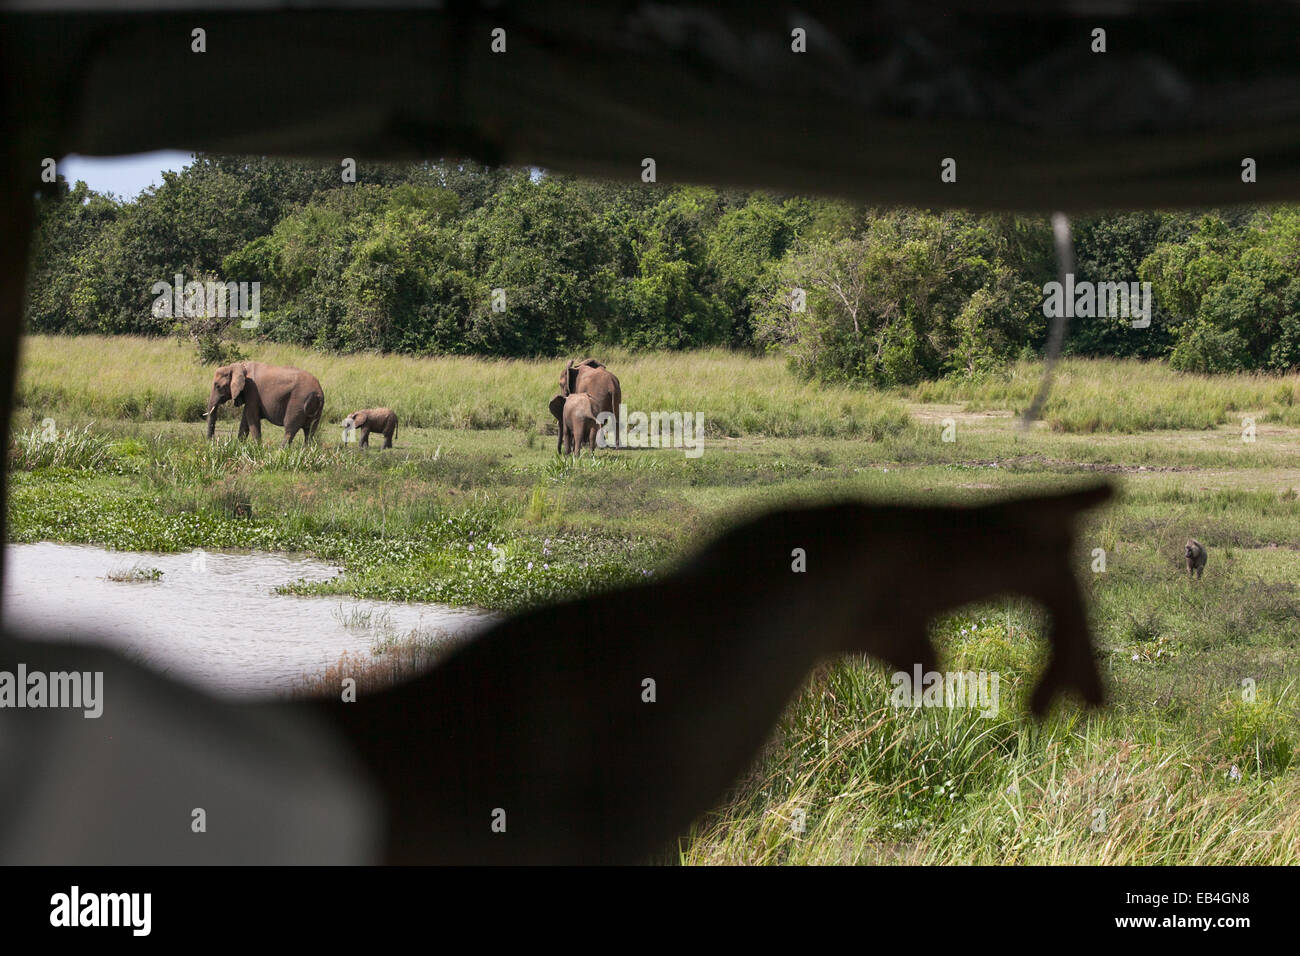 Una guía del safari puntos a través de una ventana a una manada de elefantes y la vida salvaje en la hierba. Foto de stock